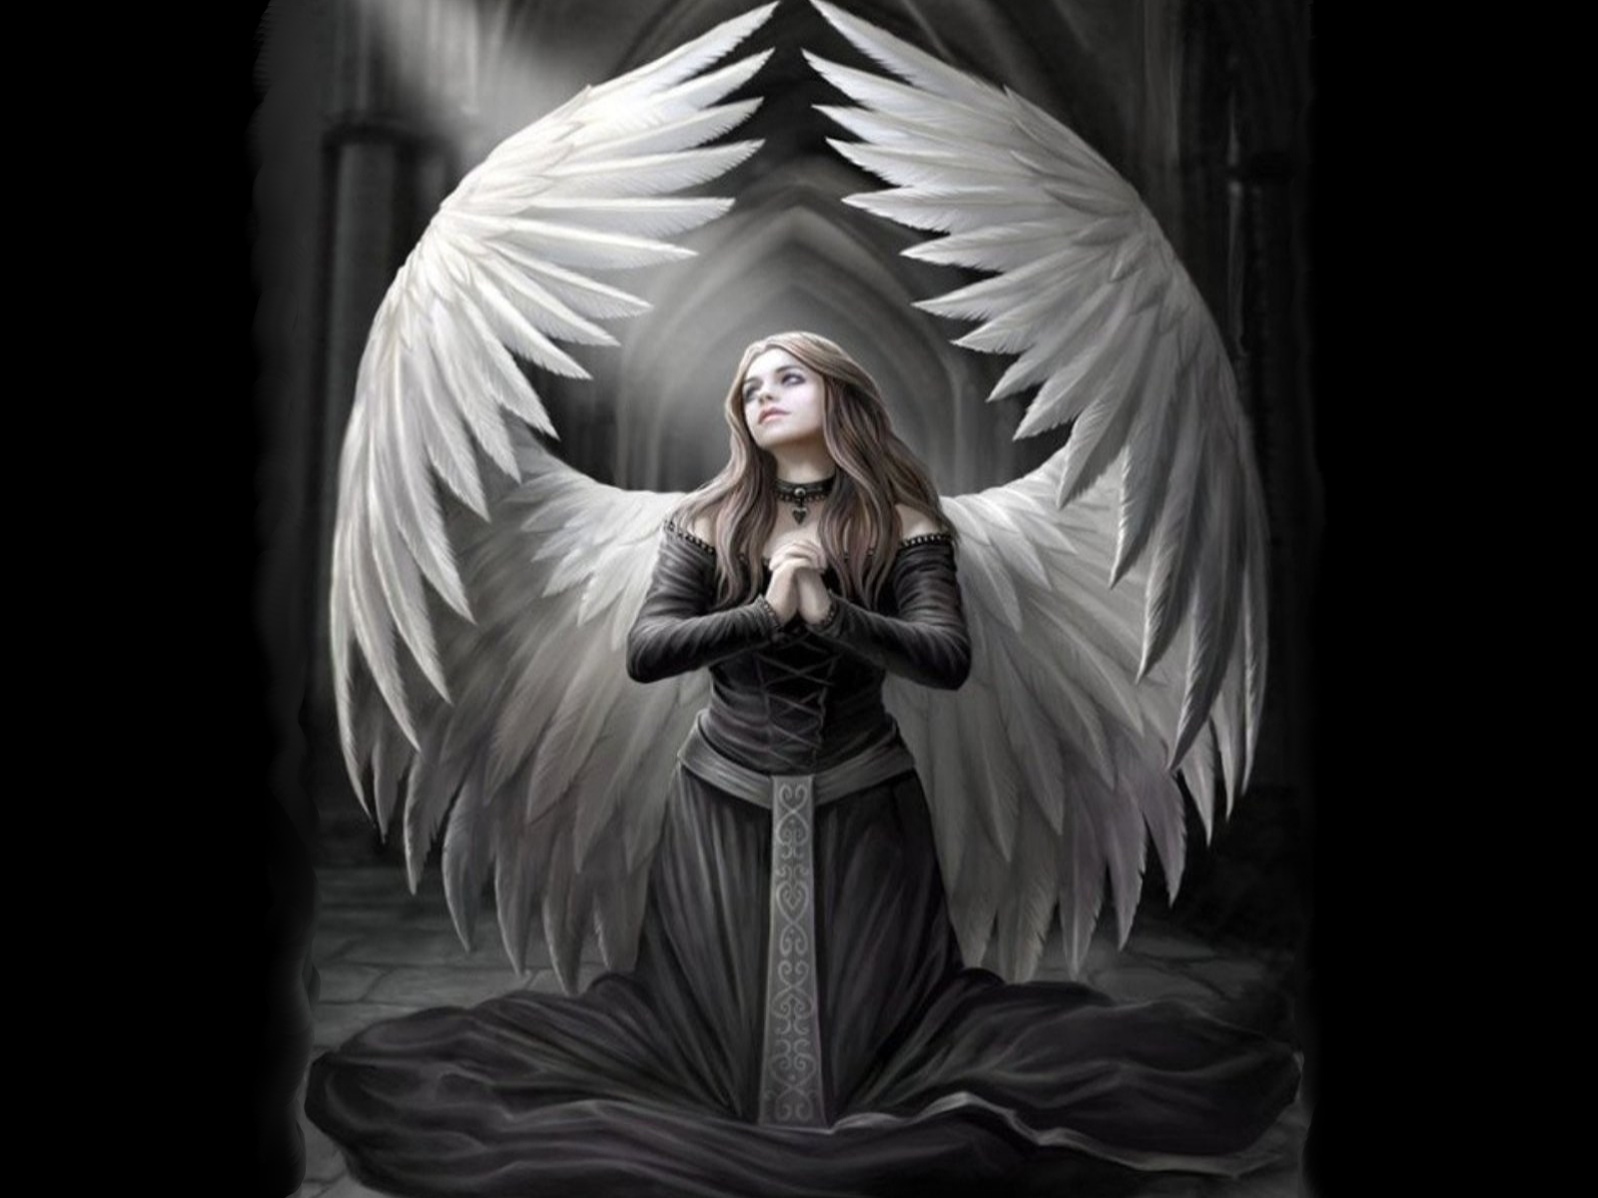 engel tapete,engel,mythologie,erfundener charakter,übernatürliche kreatur,kunst